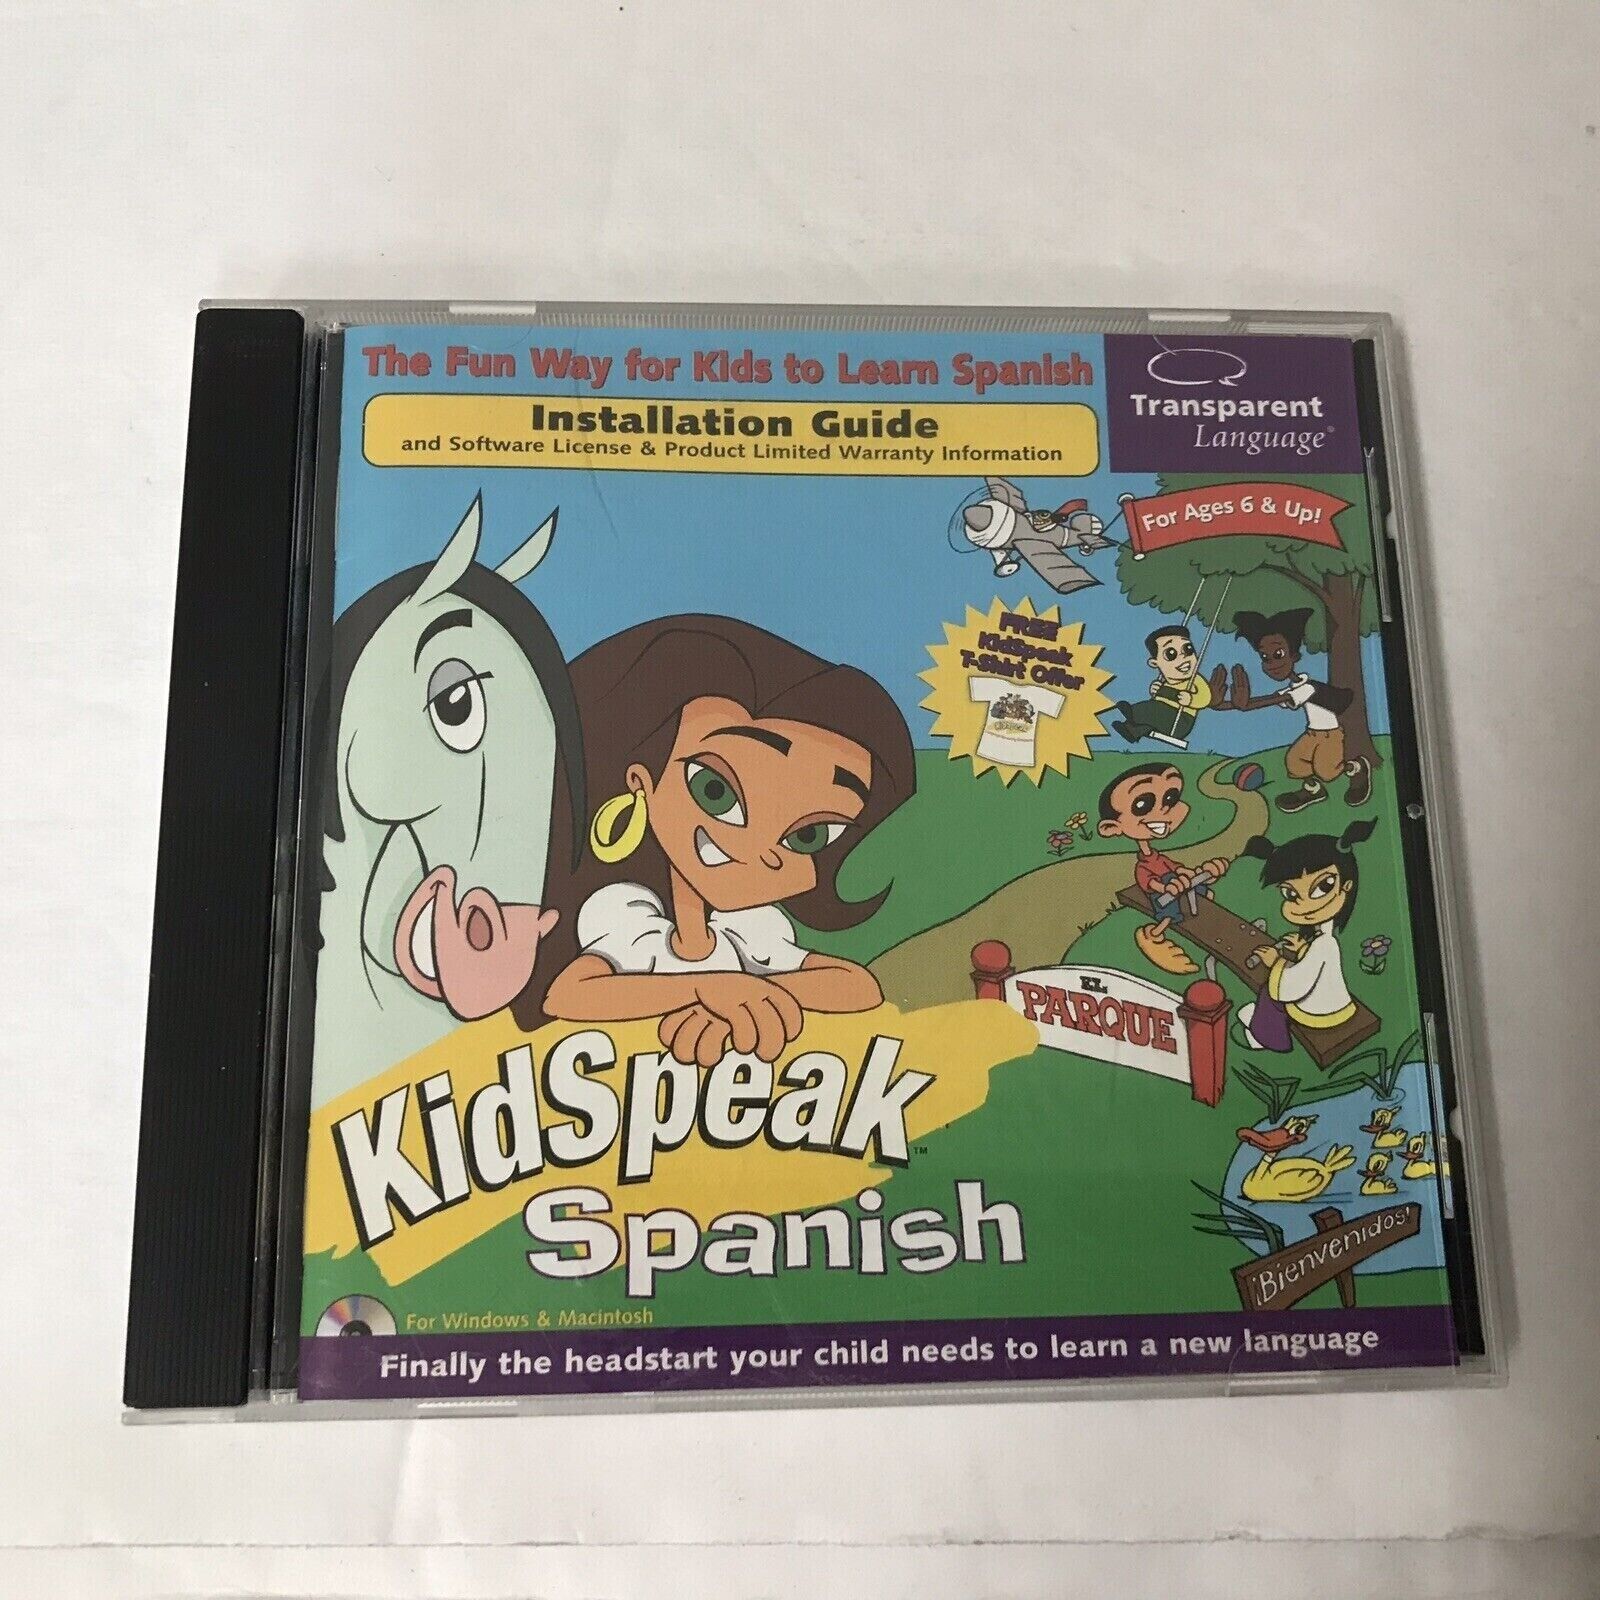 KidSpeak Spanish PC MAC CD Transparent Language Vintage Software